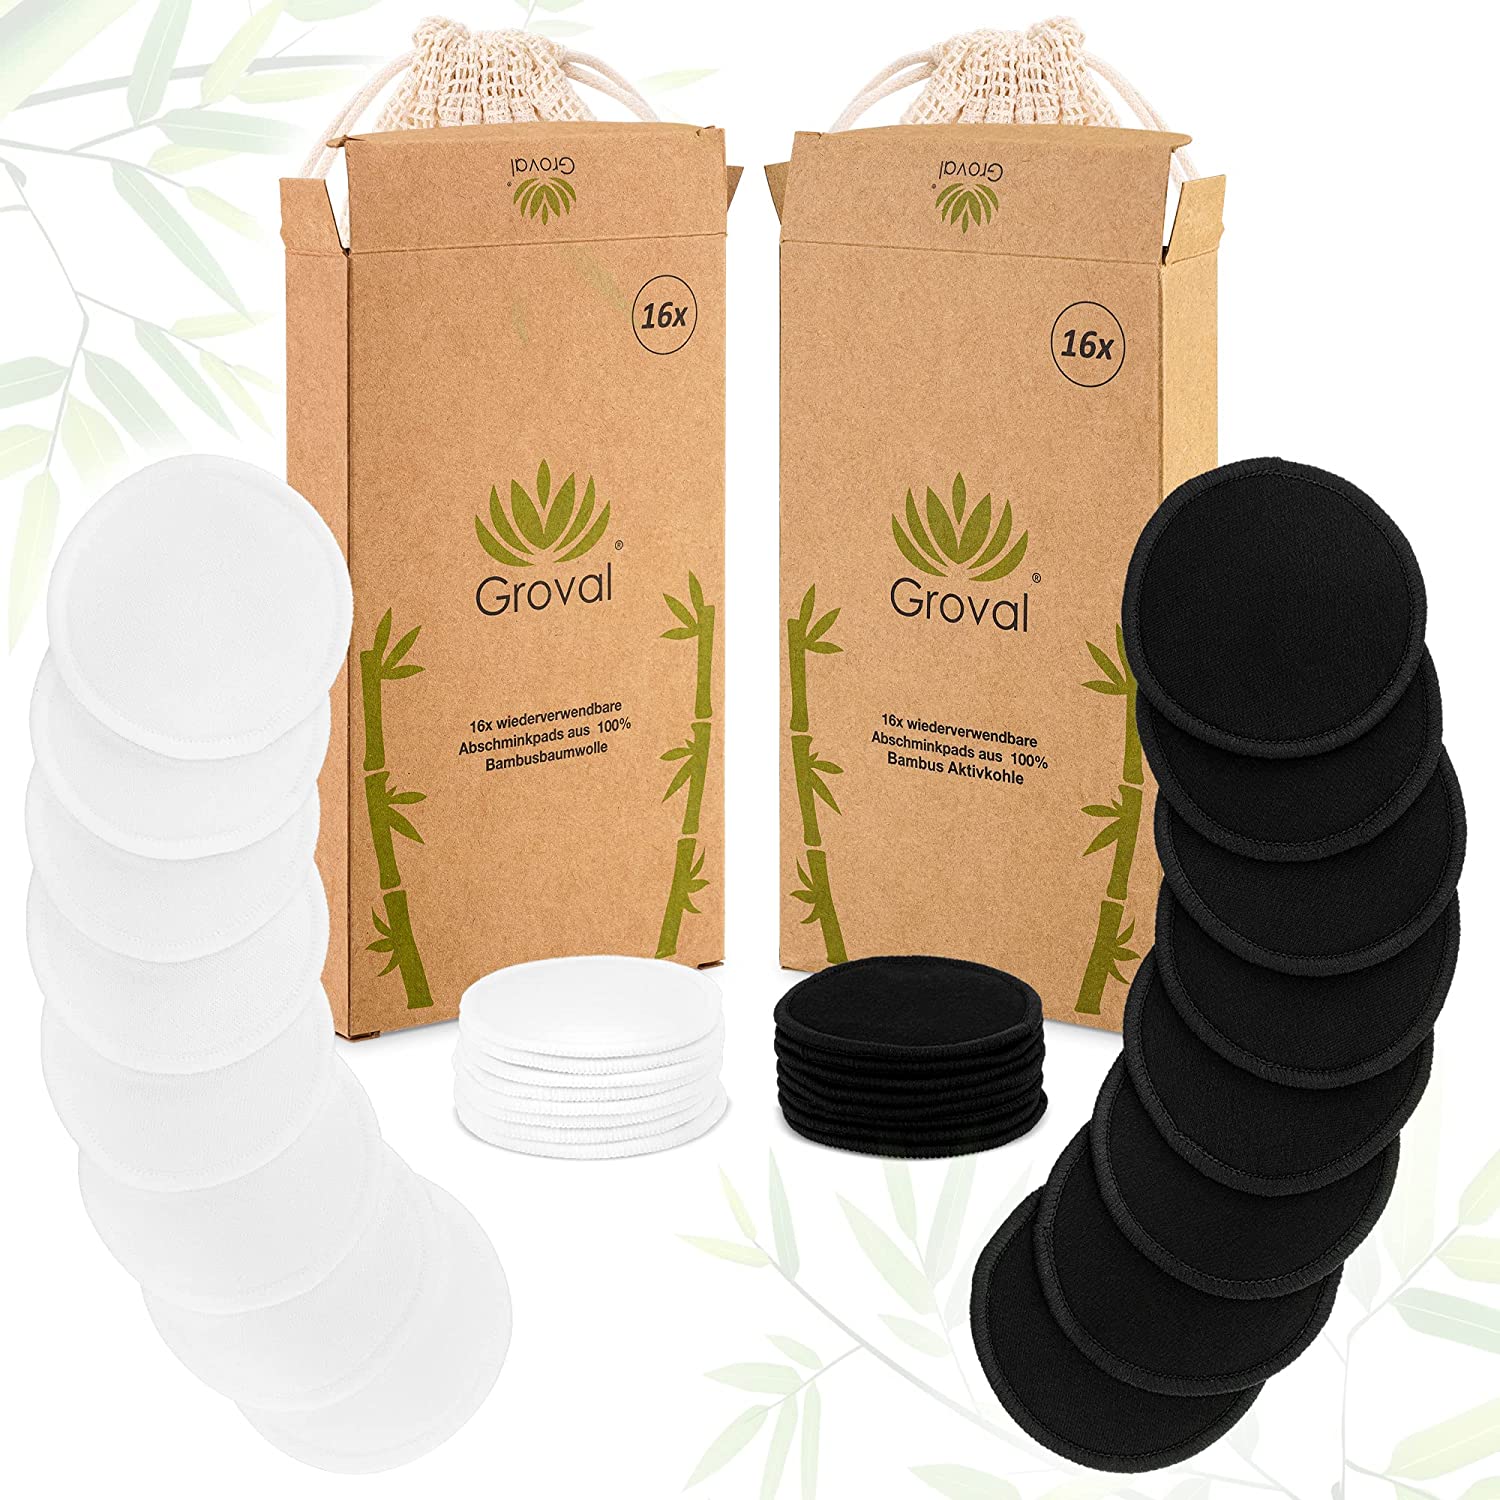 16x wiederverwendbare Abschminkpads |100% Bambusbaumwolle mit Wäschenetz | Make-Up Entferner | Waschbar Vegan Nachhaltig Umwelt | geeignet für Groval Bambusboxspender